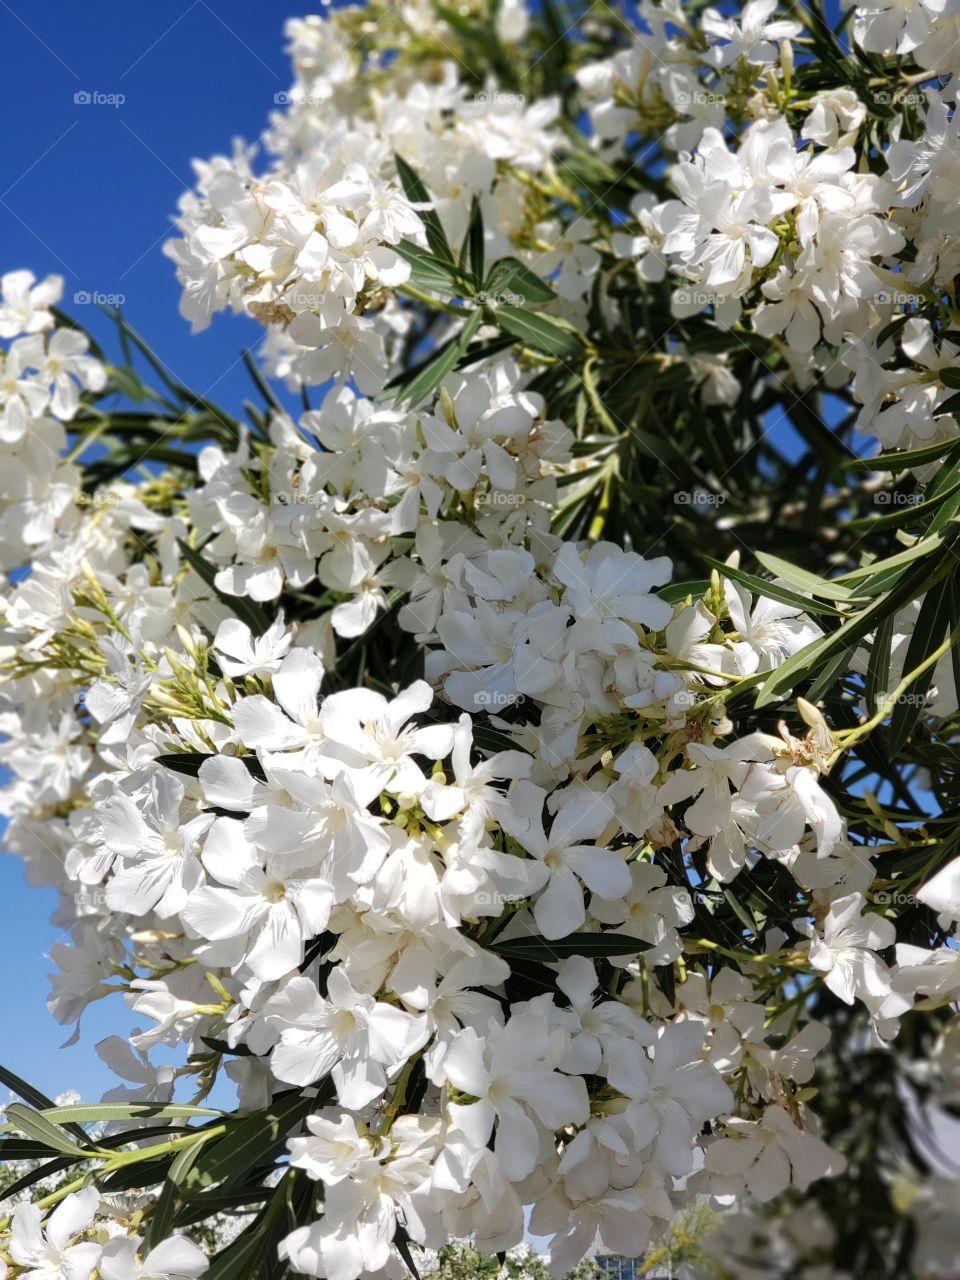 white oleander